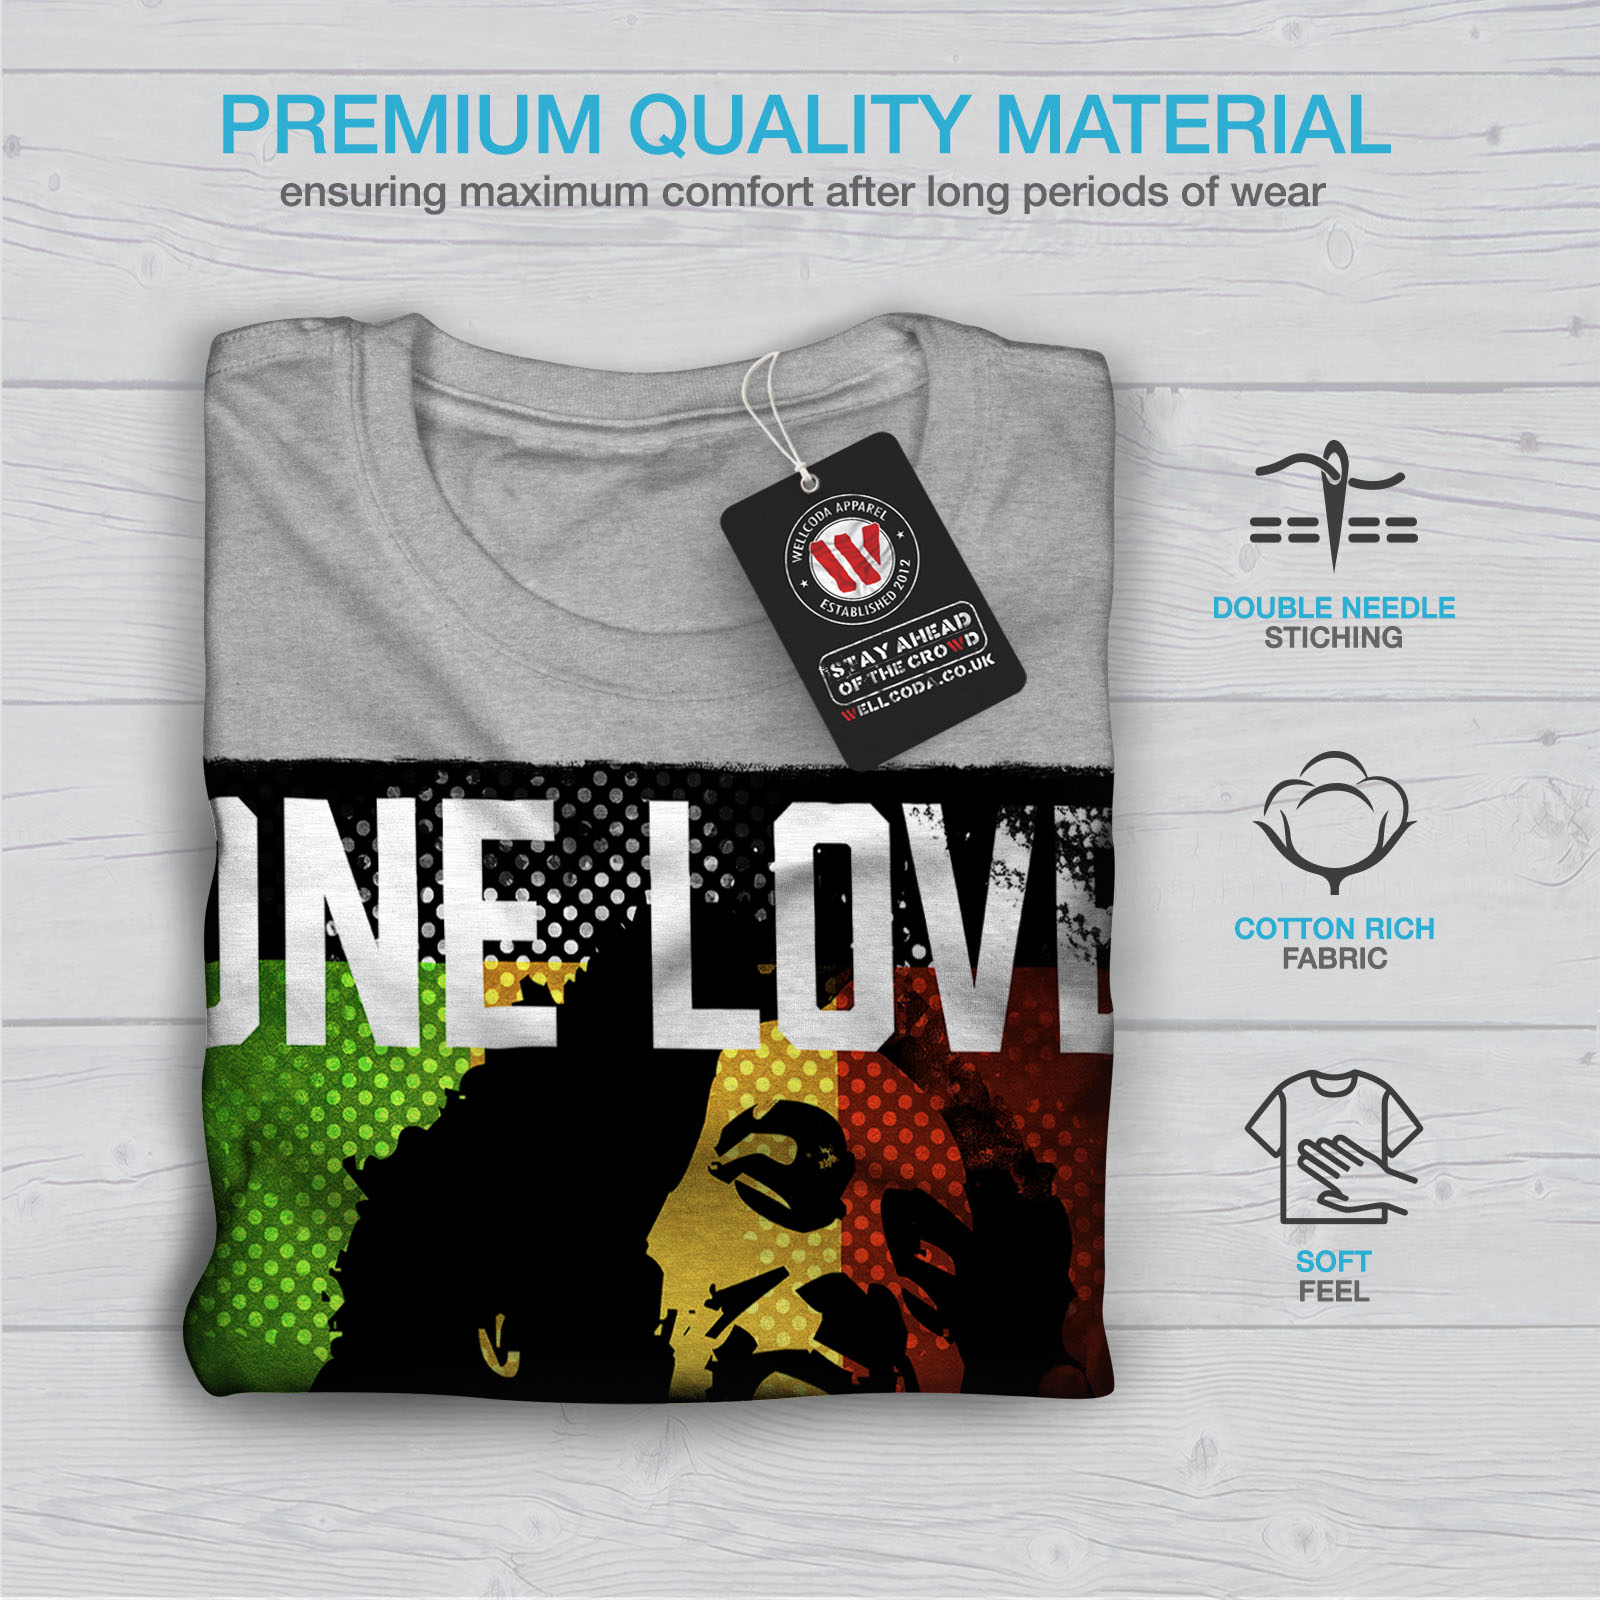 conception graphique imprimé Tee Wellcoda One Love 420 pot T-shirt homme libre 